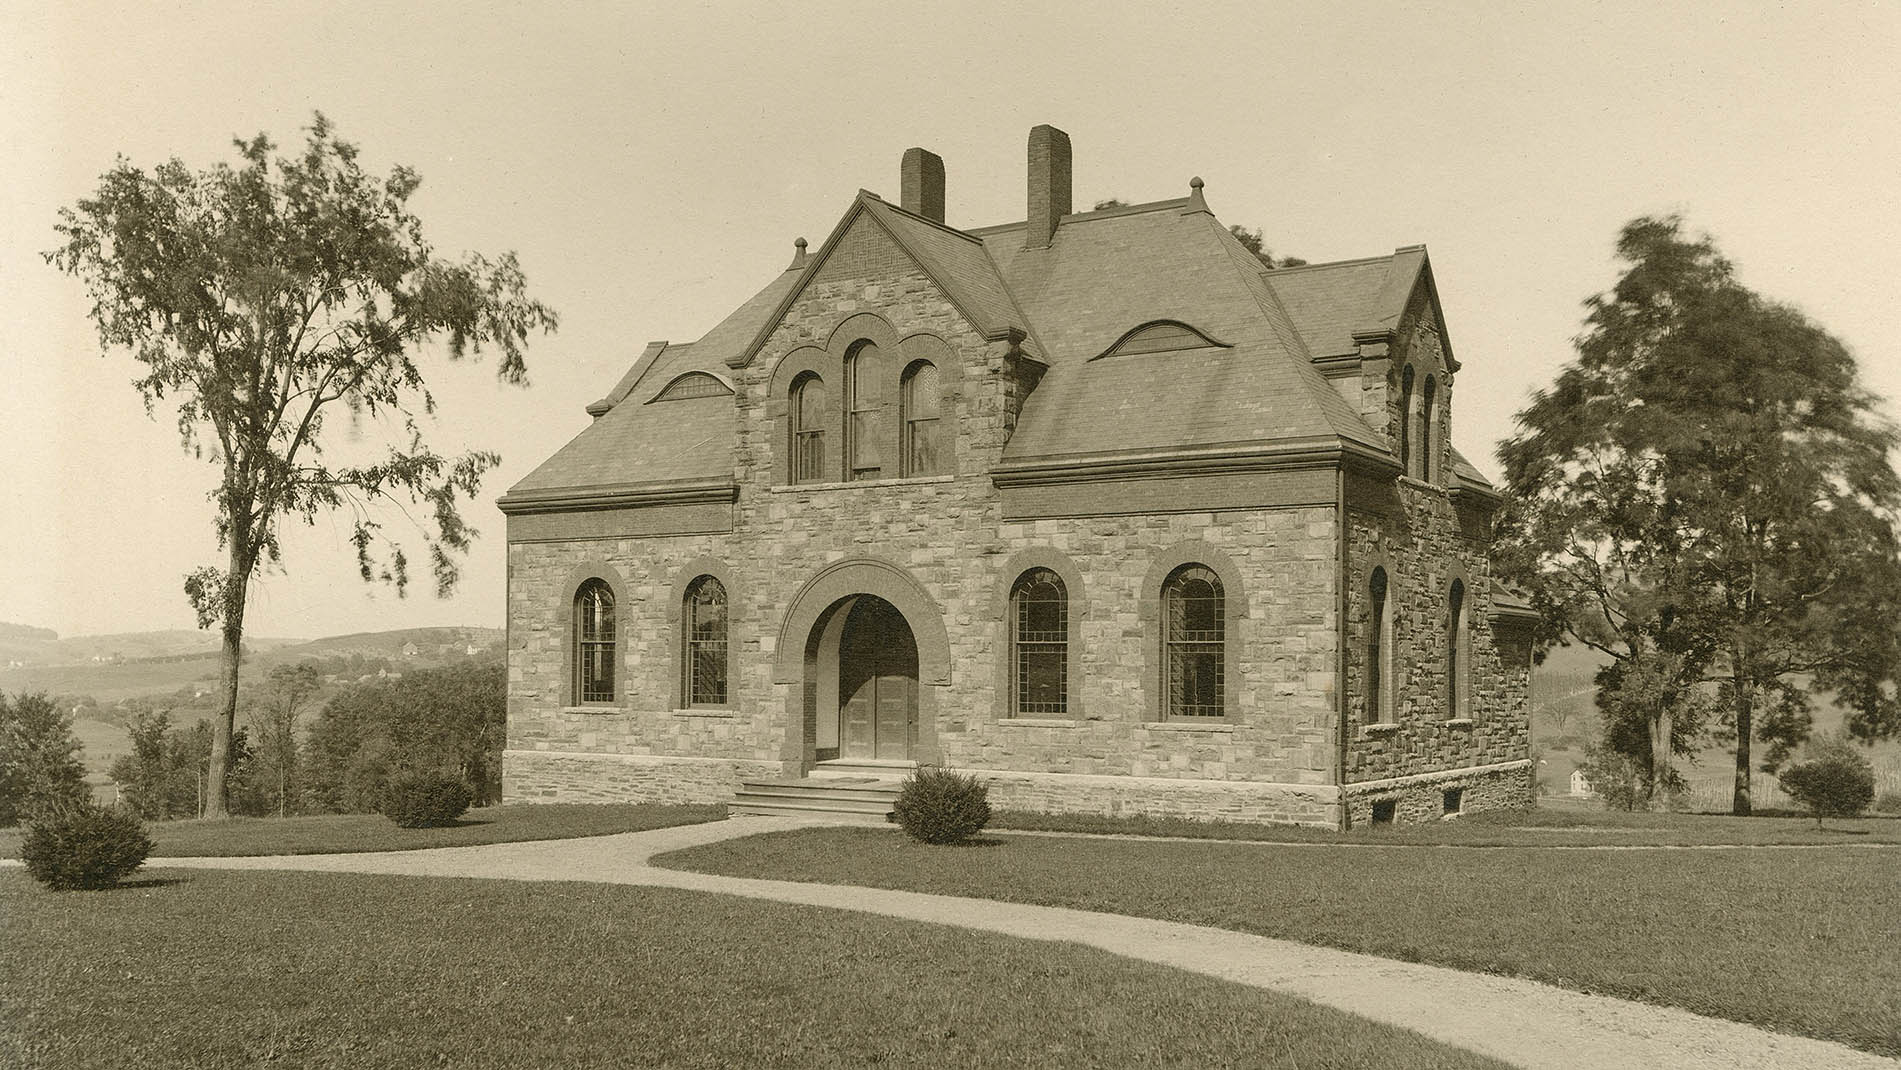 Hascall Hall, circa 1900